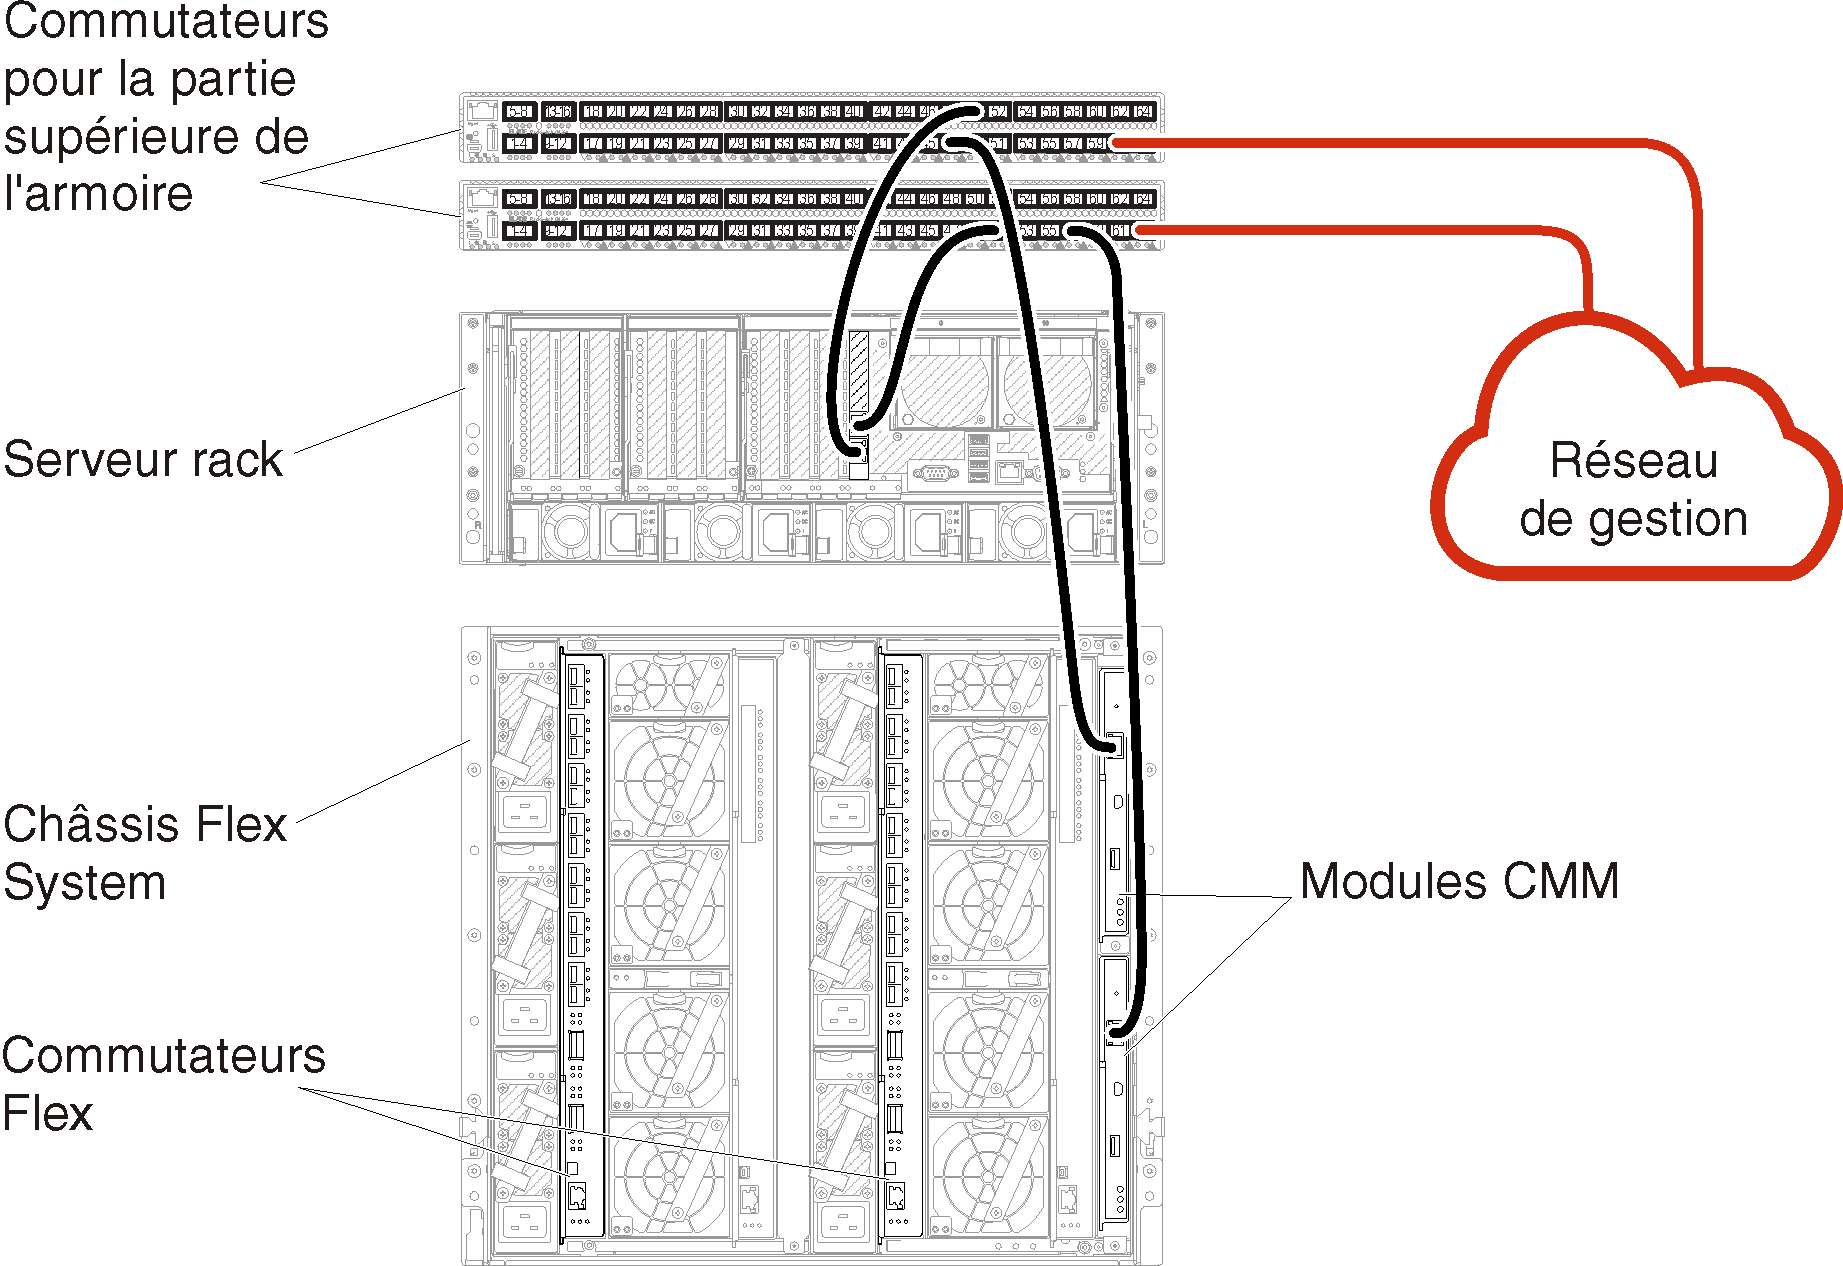 Illustre le câblage du châssis et des serveurs rack sur les commutateurs de la partie supérieure de l'armoire pour un réseau de gestion uniquement